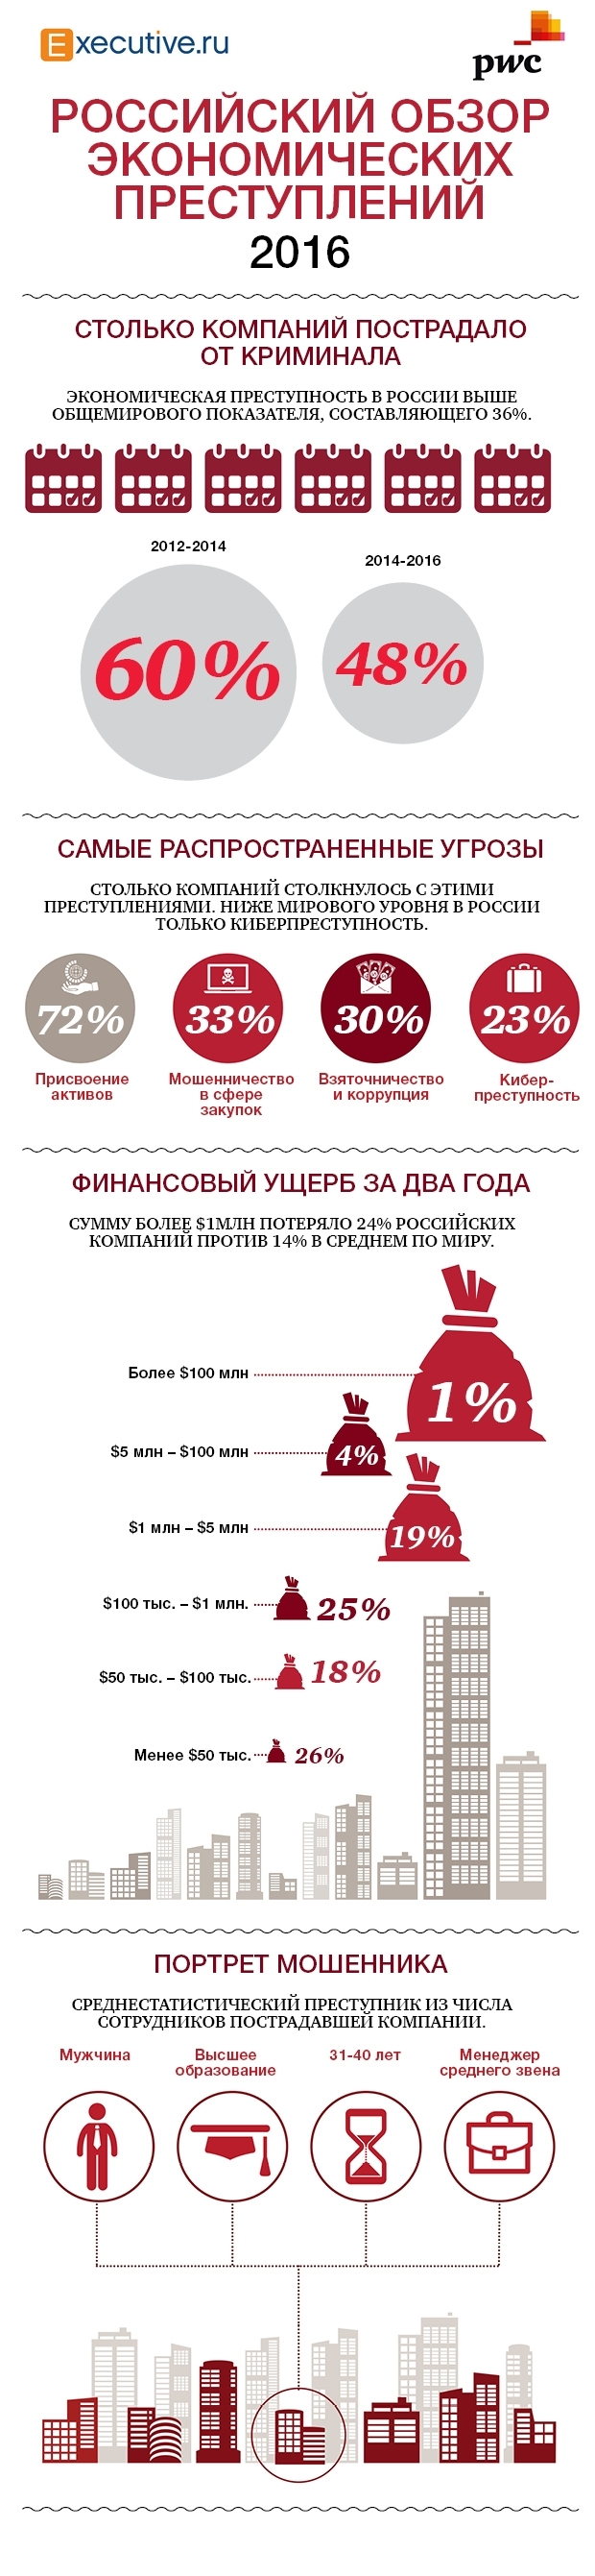 Экономическая преступность в России в 2016 году